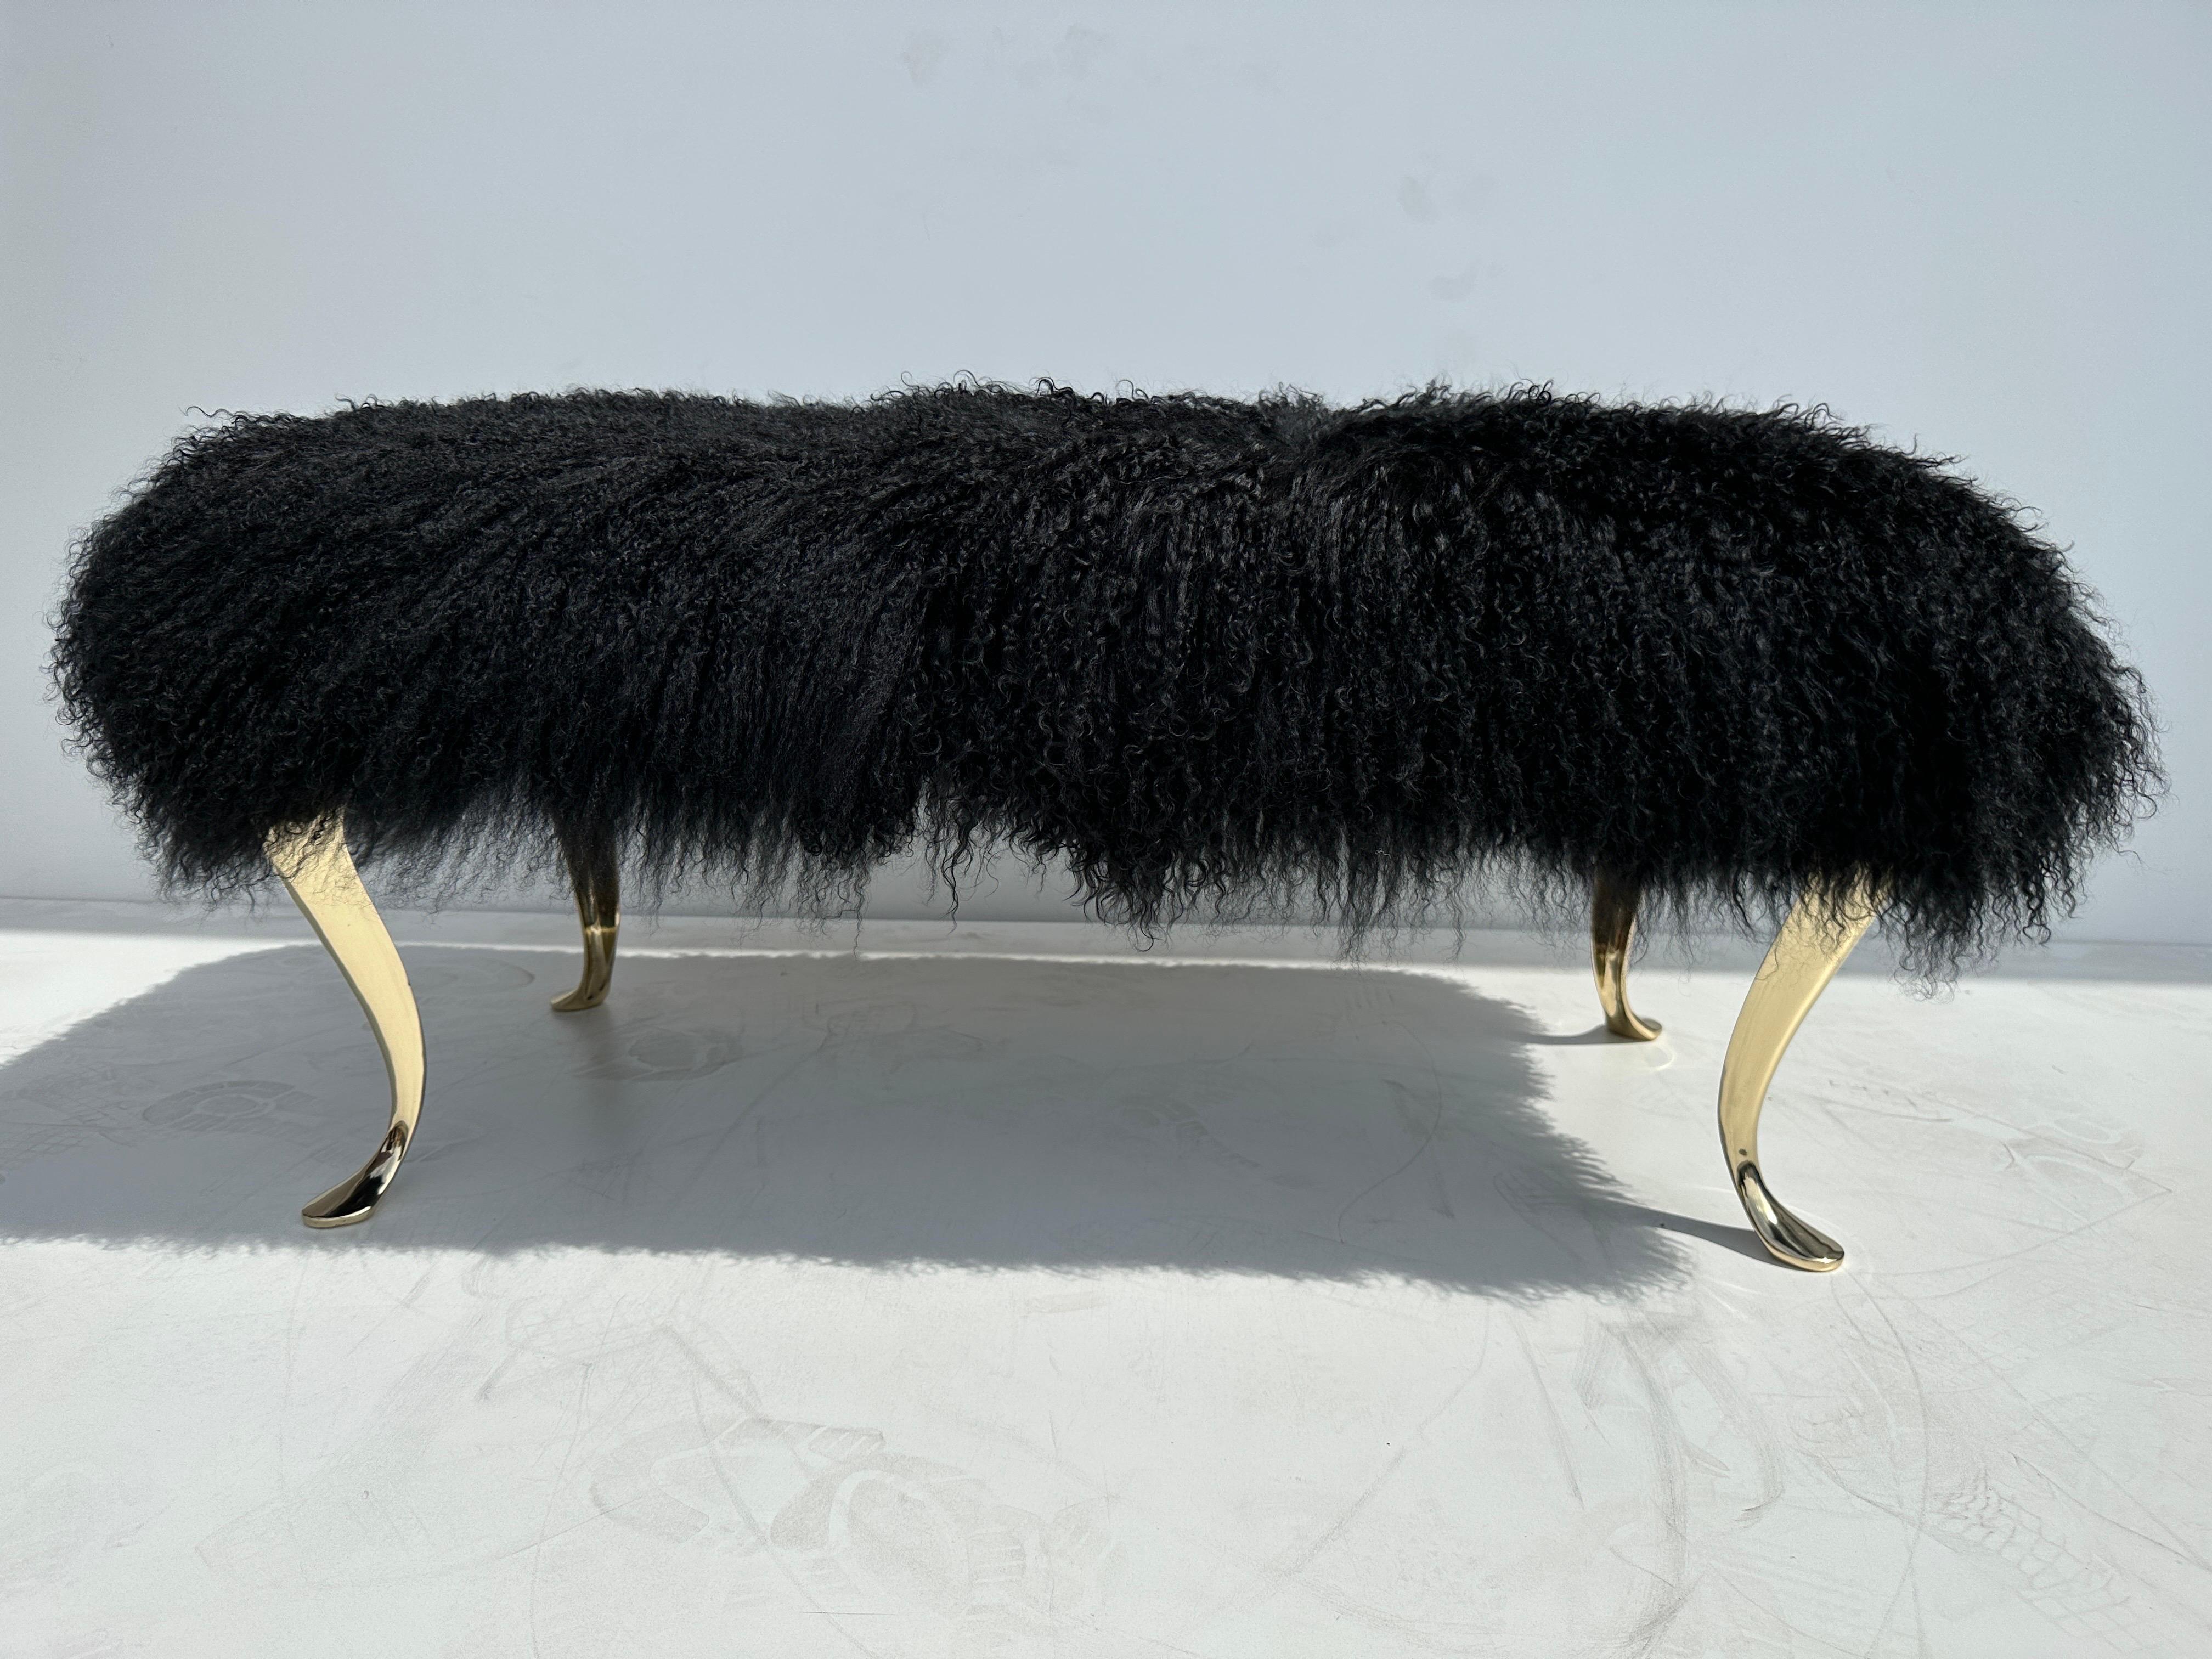 Schwarze Bank aus tibetanischem Schafspelz mit polierten Messing-Cabrio-Beinen.
Die Messingbeine sind italienischer Vintage aus den 1970er Jahren. Die Pelzpolsterung ist brandneu.